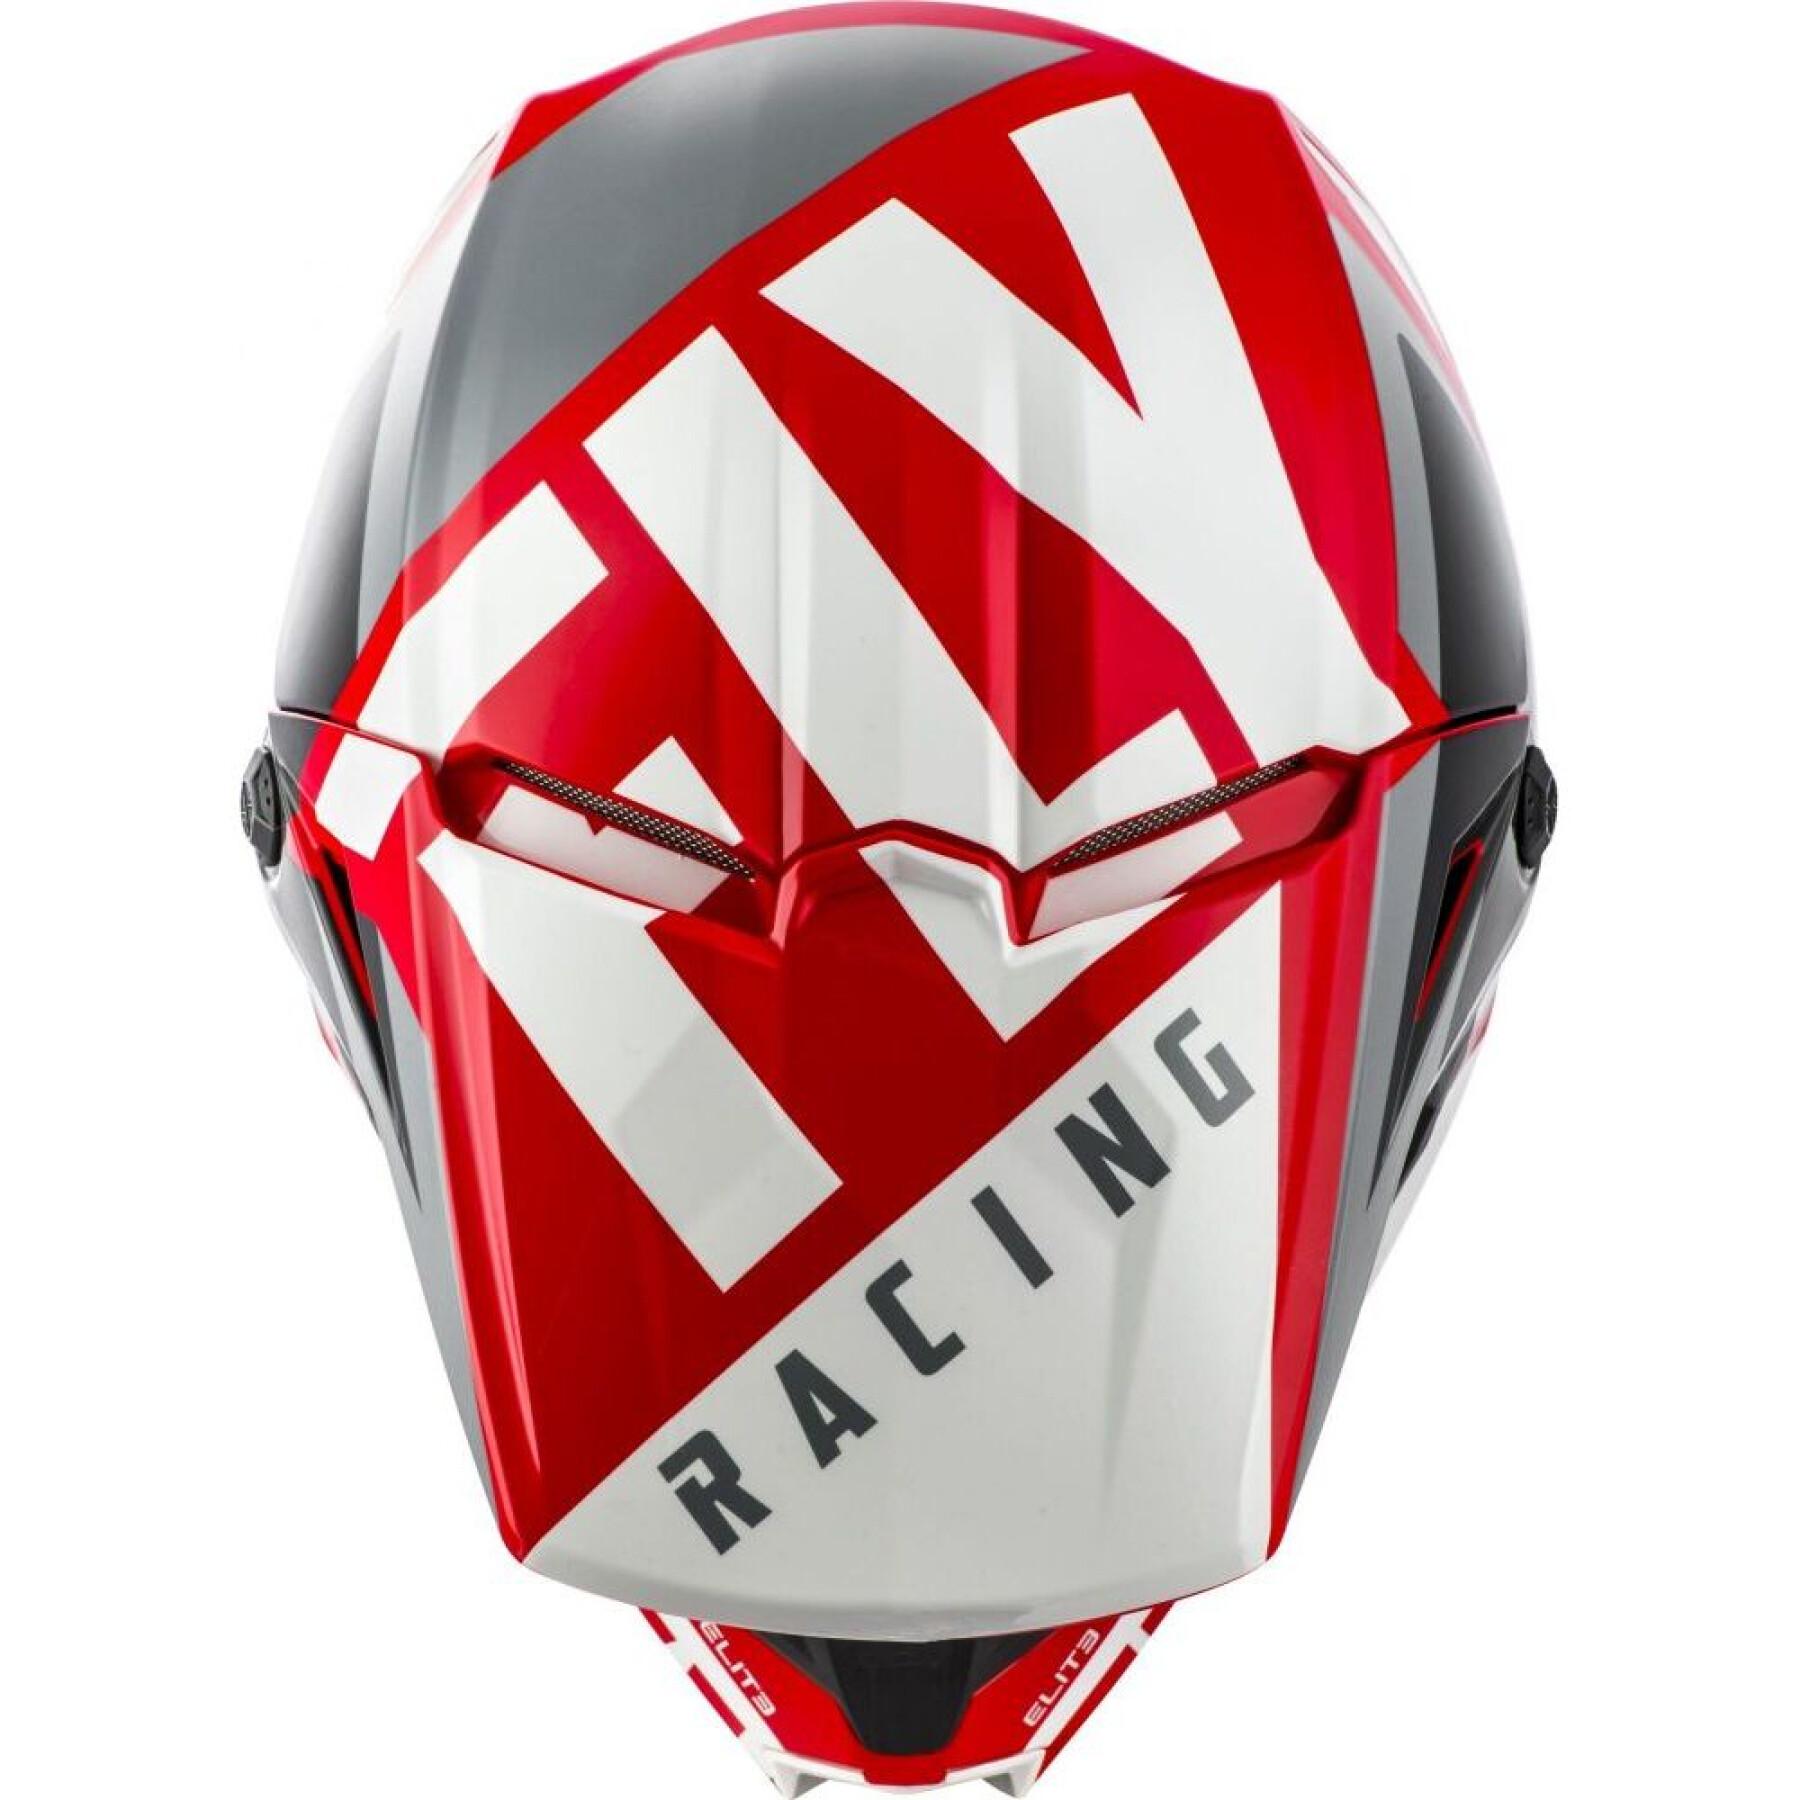 Motorcycle helmet Fly Racing Elite Vigilant 2019